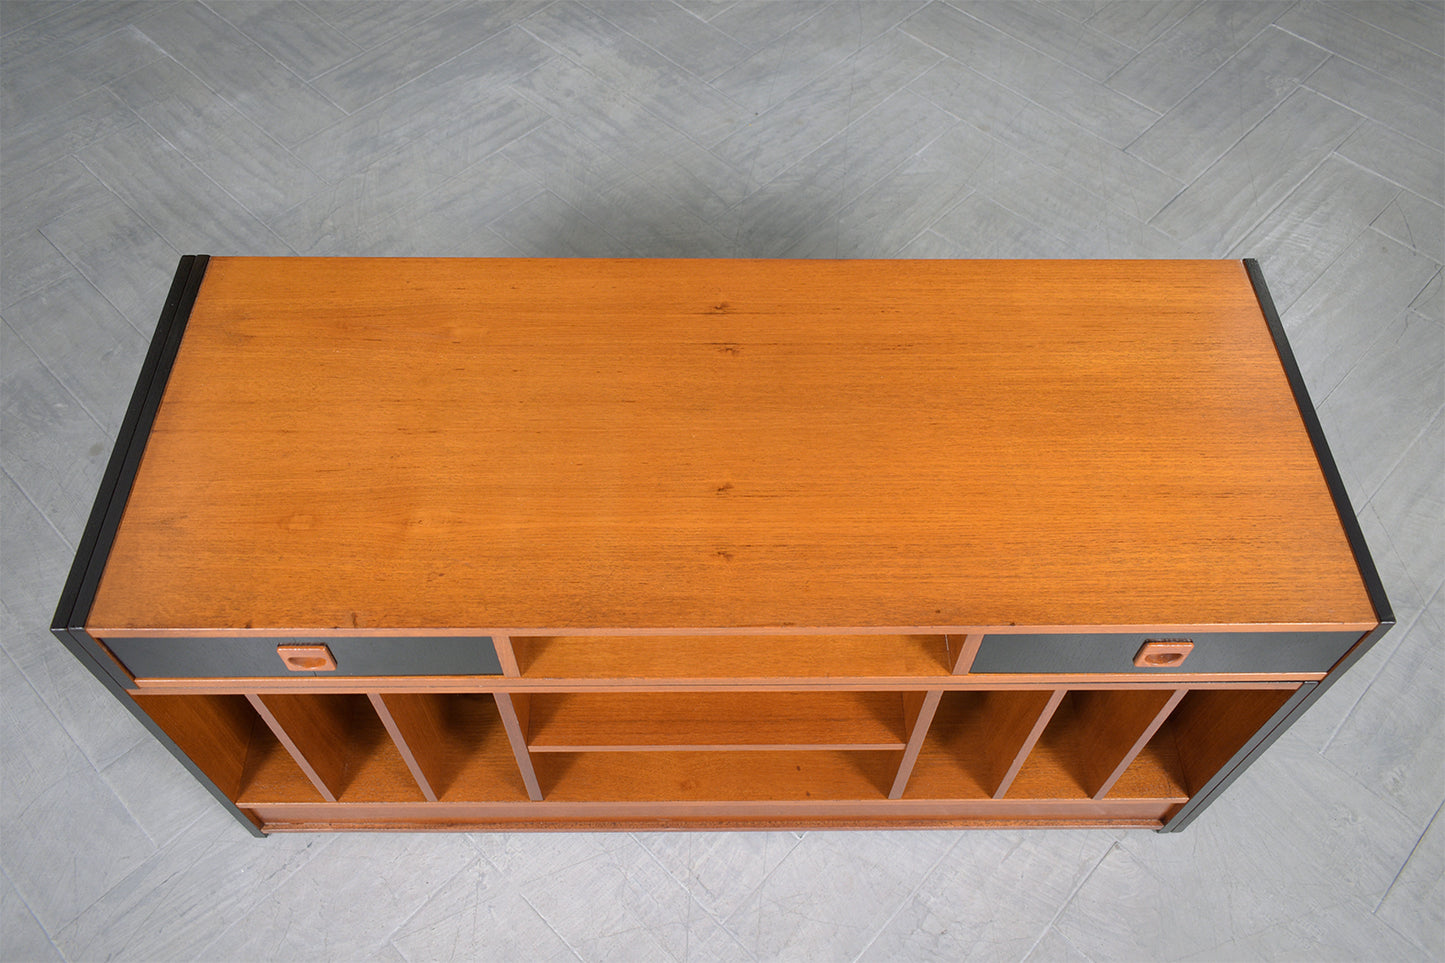 Vintage Mid-Century Modern Adjustable Cabinet: Functional Elegance Redefined